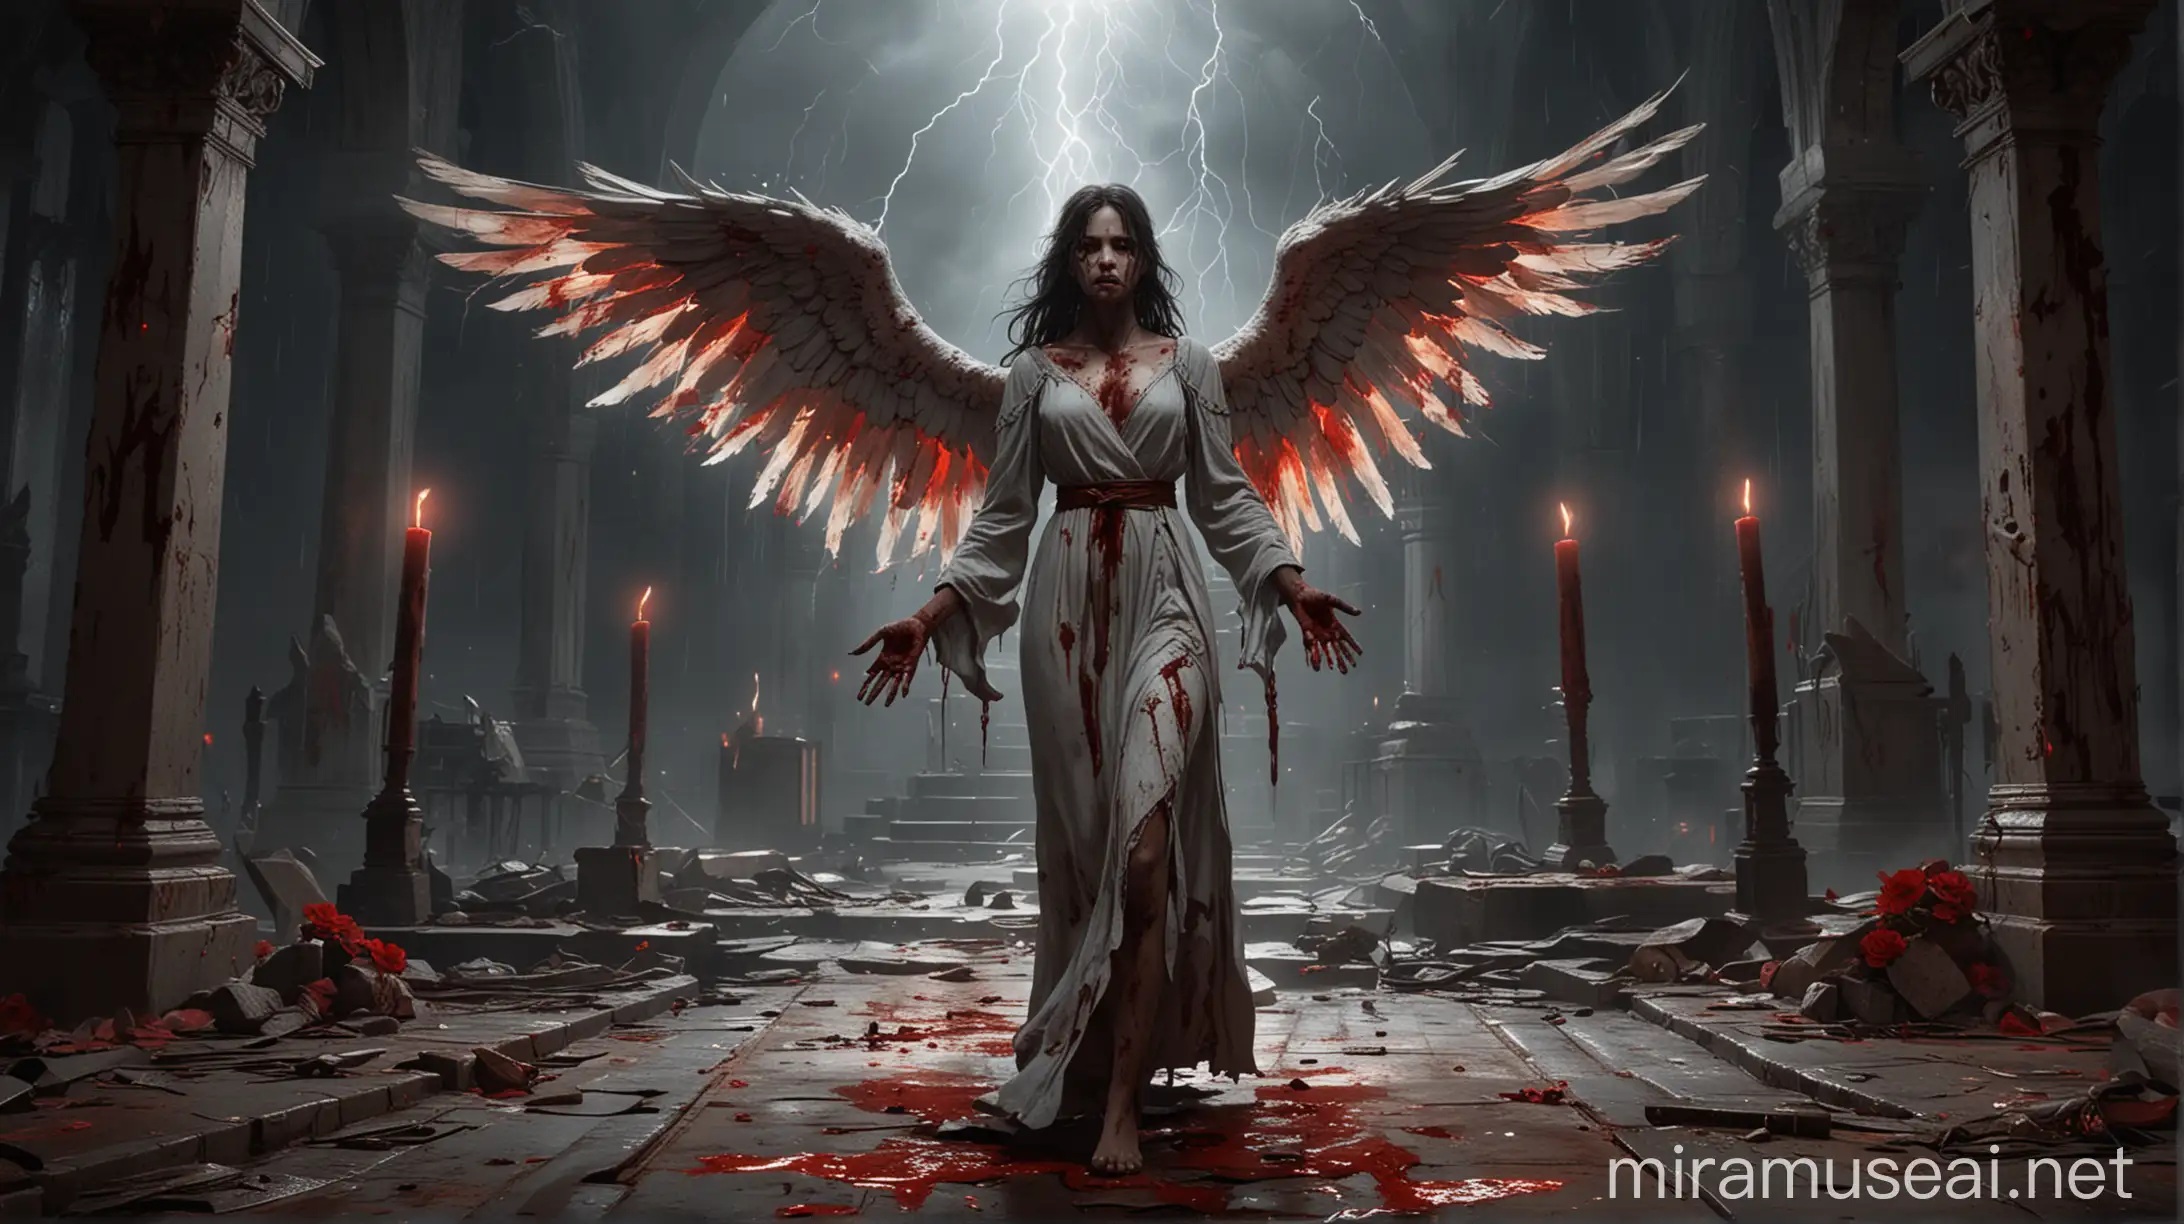 Стиль взятый из игры Disciples 2. Девушка-ангел с окровавленными руками идёт к алтарю на котором бушует буря с кровавыми молниями